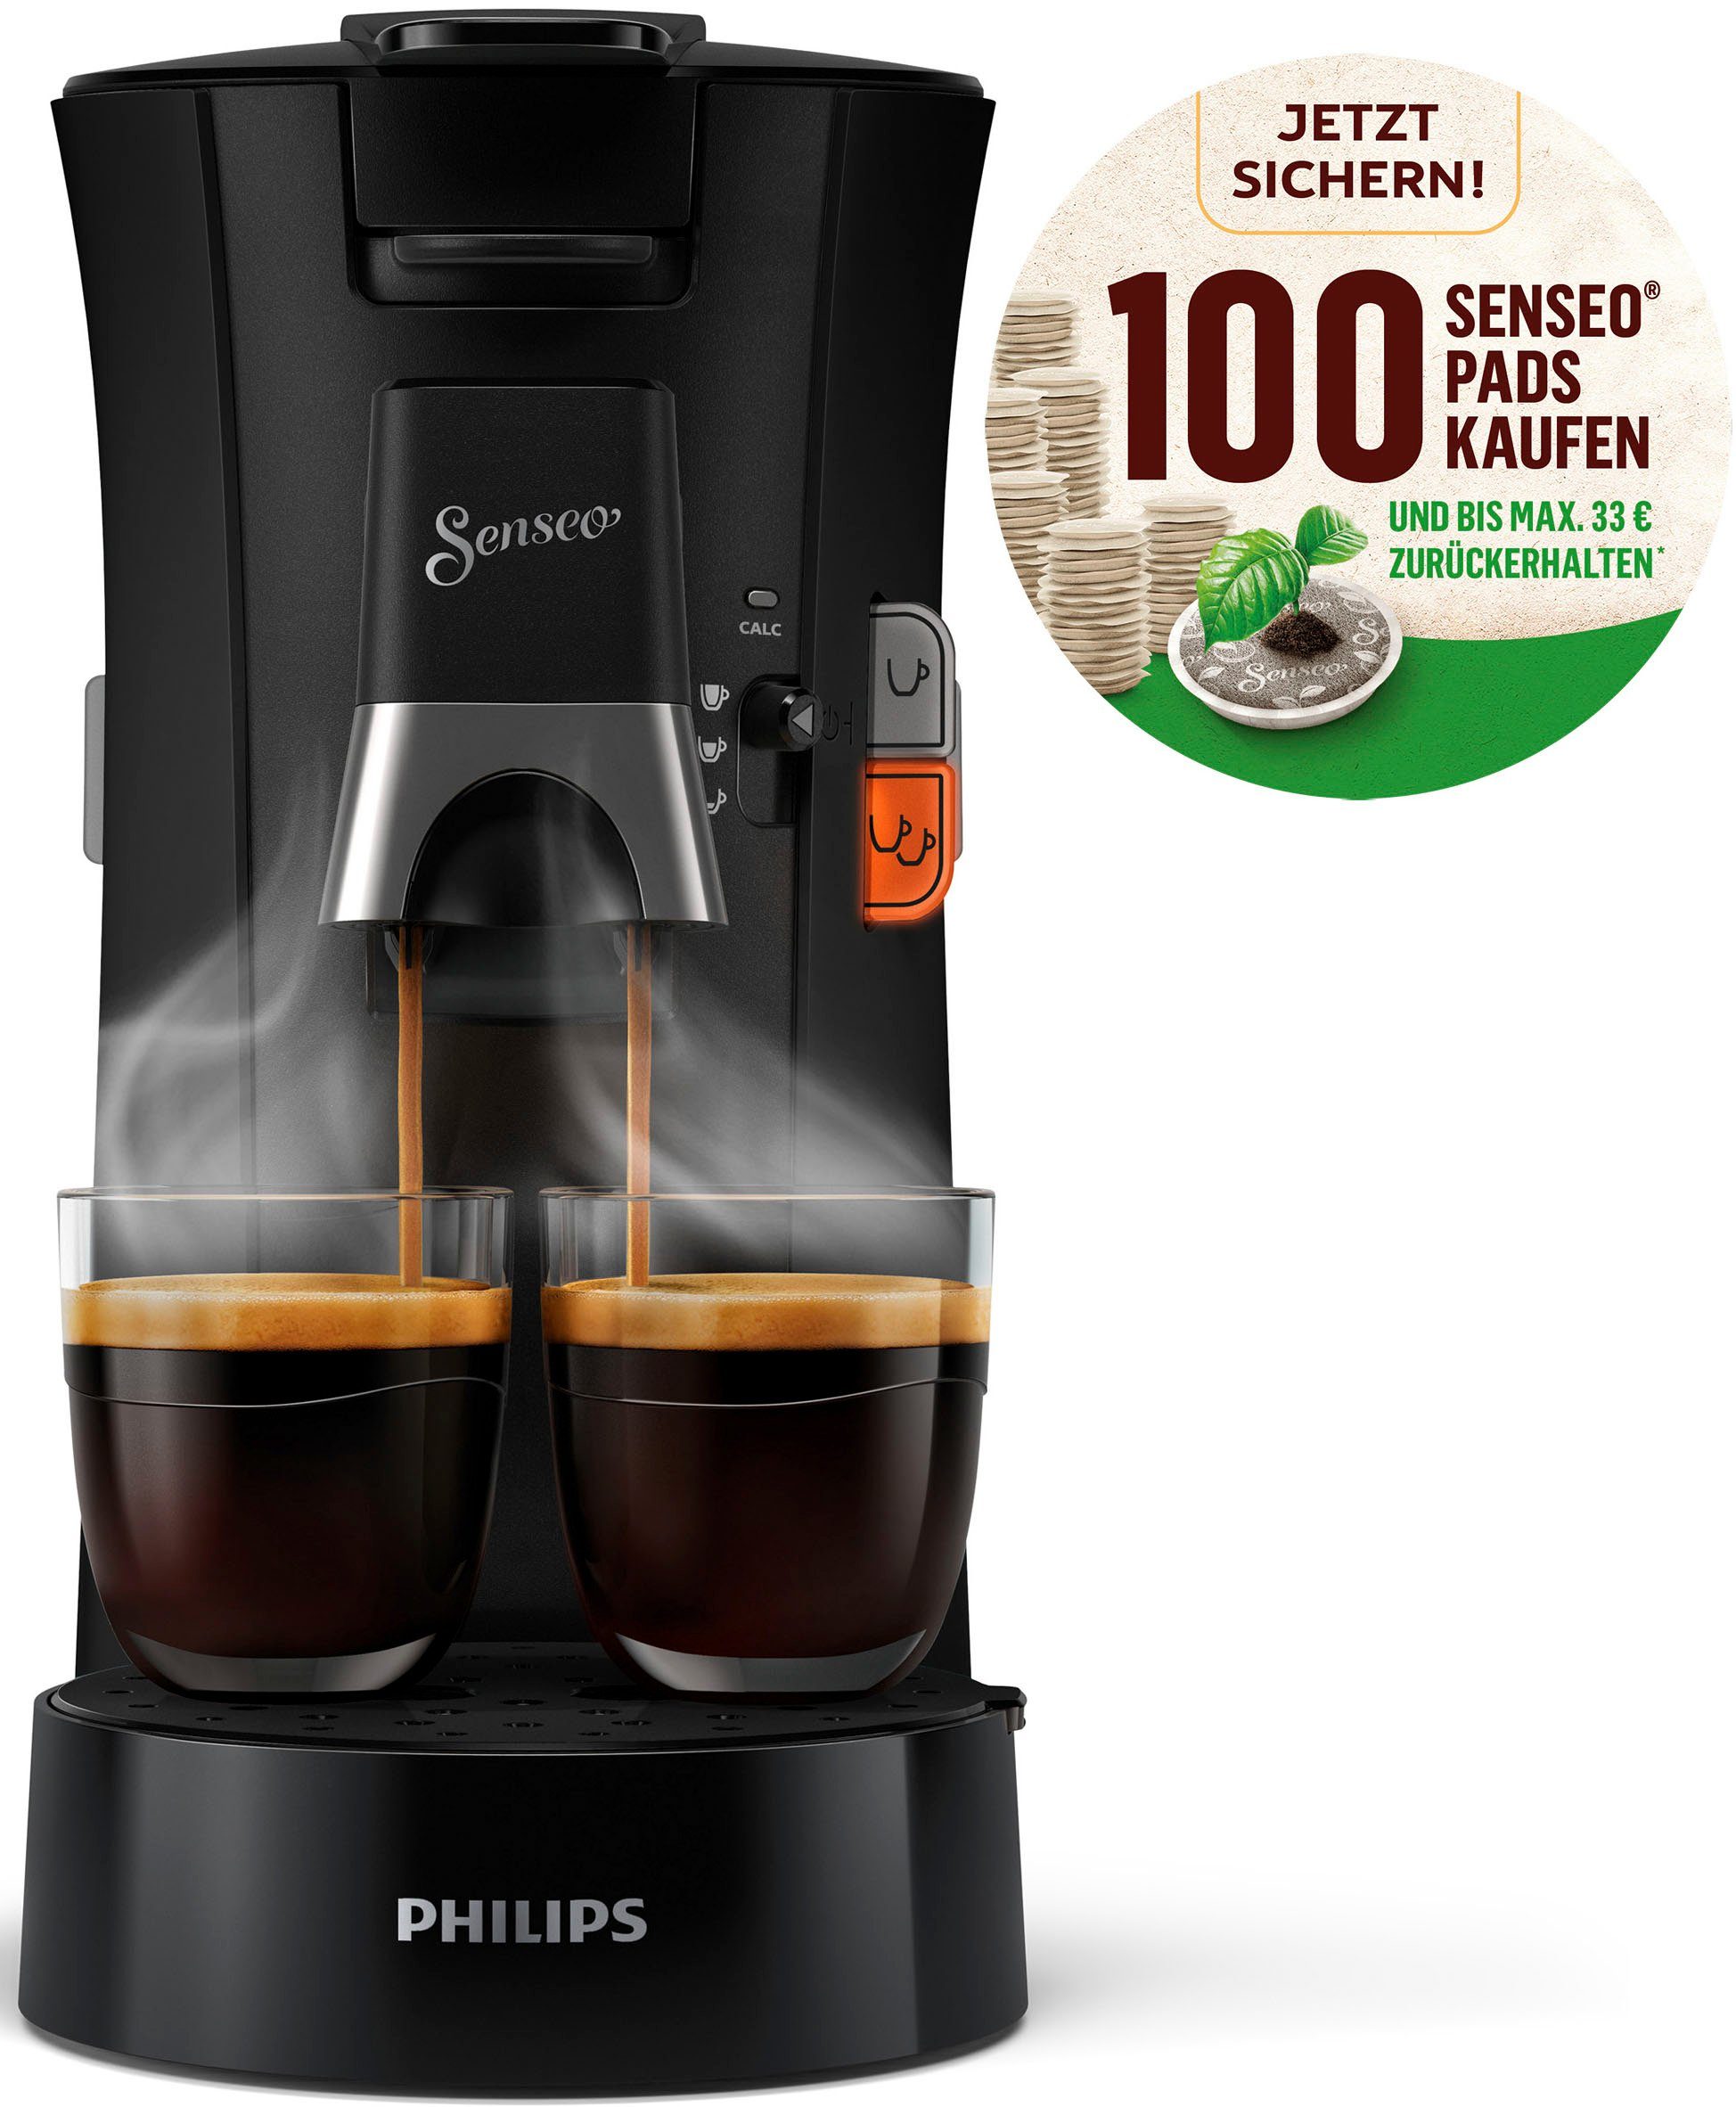 Philips Senseo Kaffeepadmaschine Select CSA230/69, kaufen € zurückerhalten Crema bis 21% und recyceltem aus Pads 100 Plus, und +3 Senseo Kaffeespezialitäten, Plastik, max.33